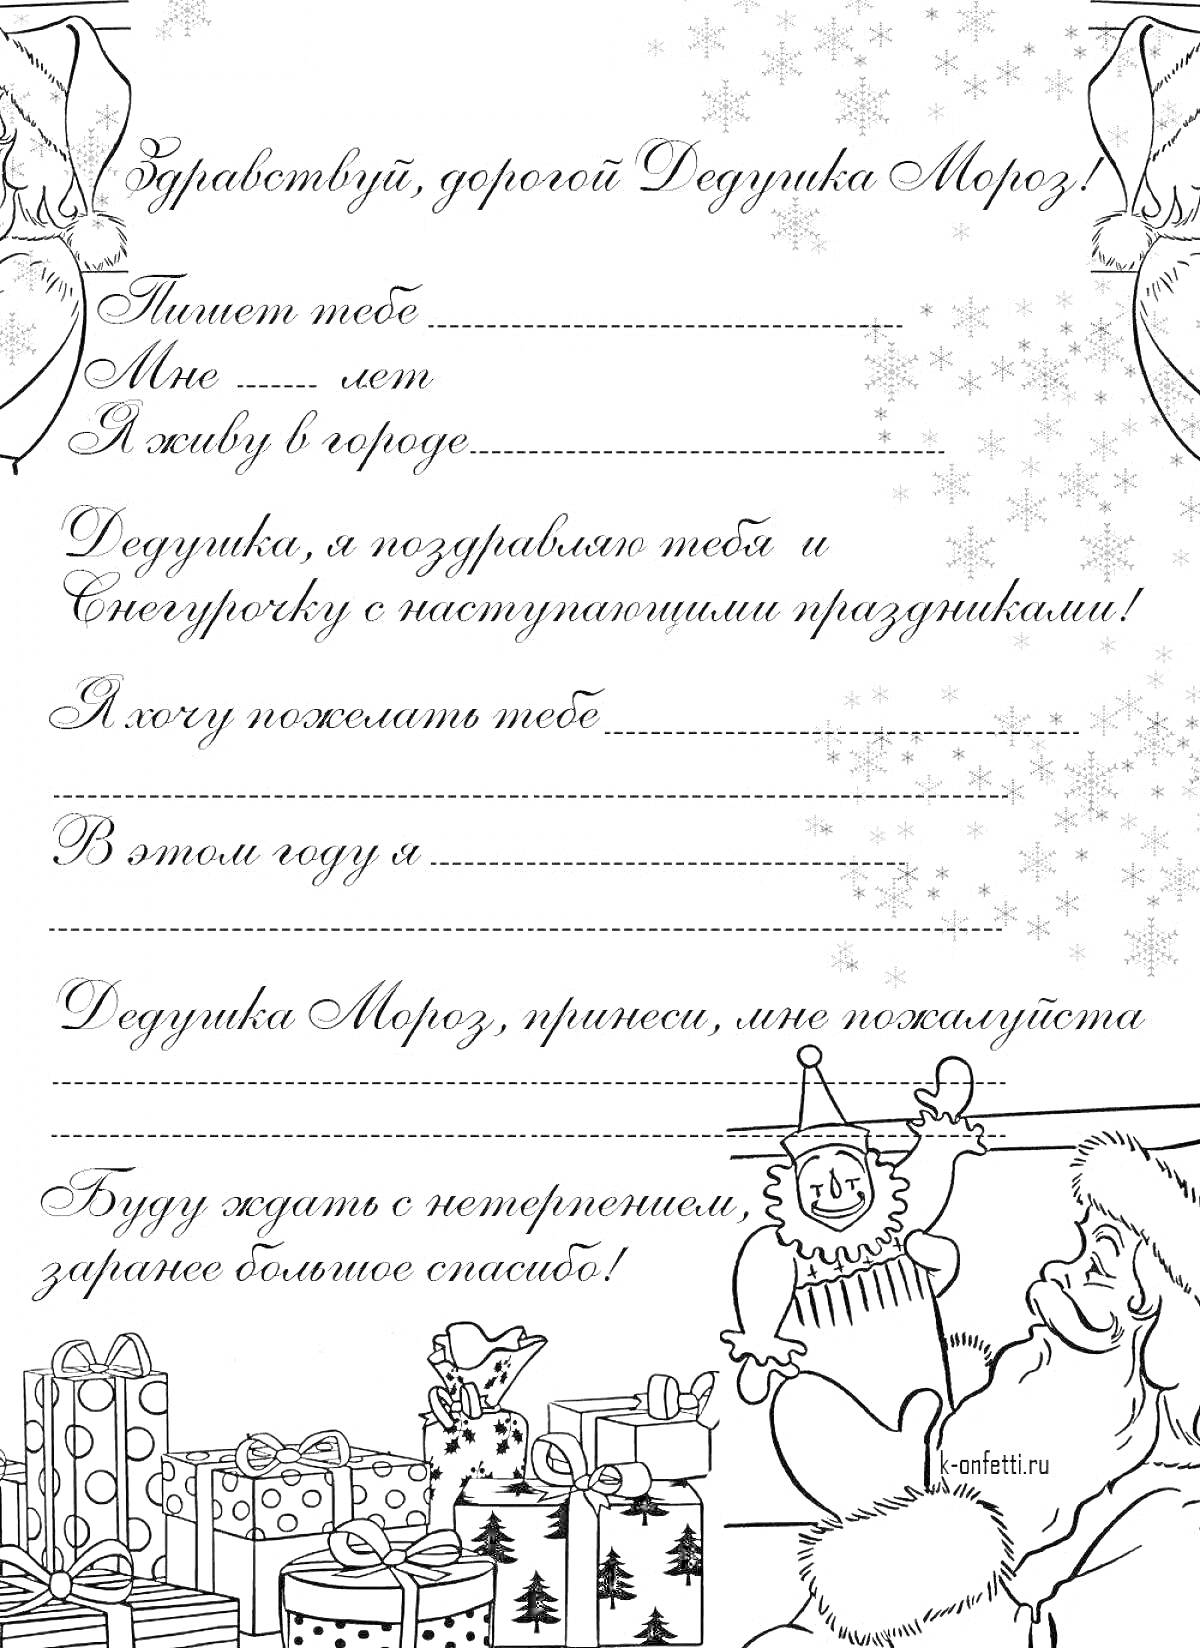 Раскраска Шаблон письма Деду Морозу с изображениями снежинок, подарков и Деда Мороза с Снеговиком